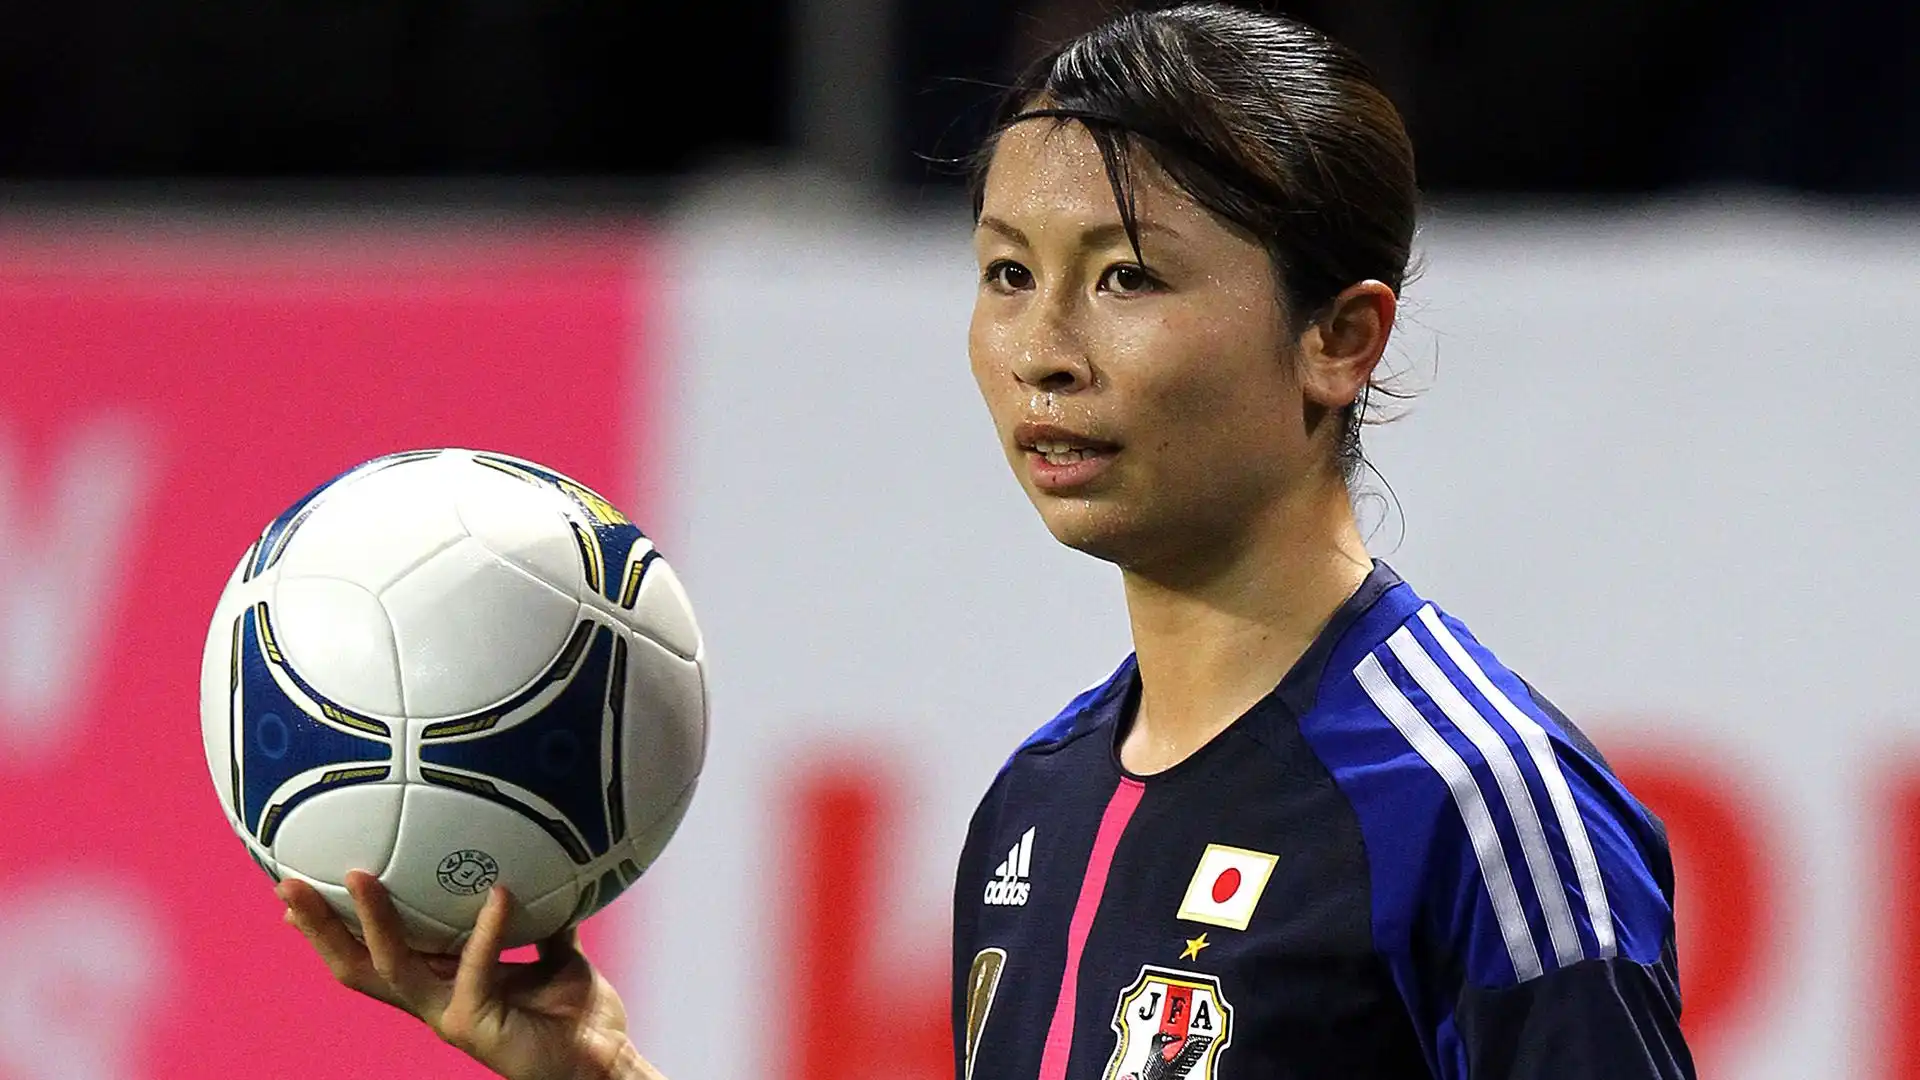 Aya Sameshima (difensore): ha giocato in Nazionale dal 2008 al 2021 per un totale di 114 partite. Ha vinto il Mondiale 2011 e la coppa d'Asia nel 2018